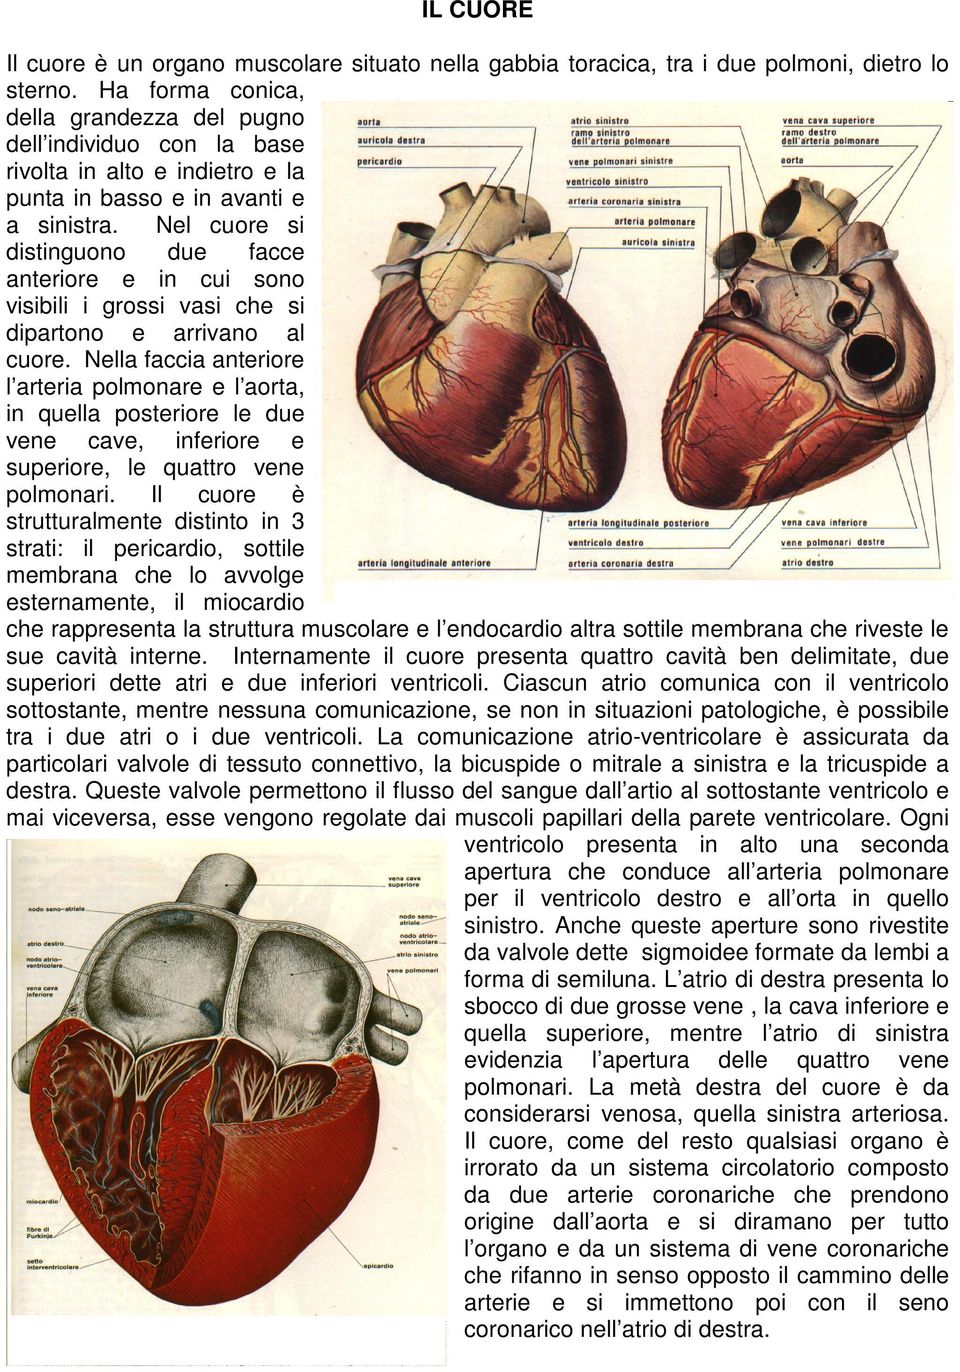 Nel cuore si distinguono due facce anteriore e in cui sono visibili i grossi vasi che si dipartono e arrivano al cuore.